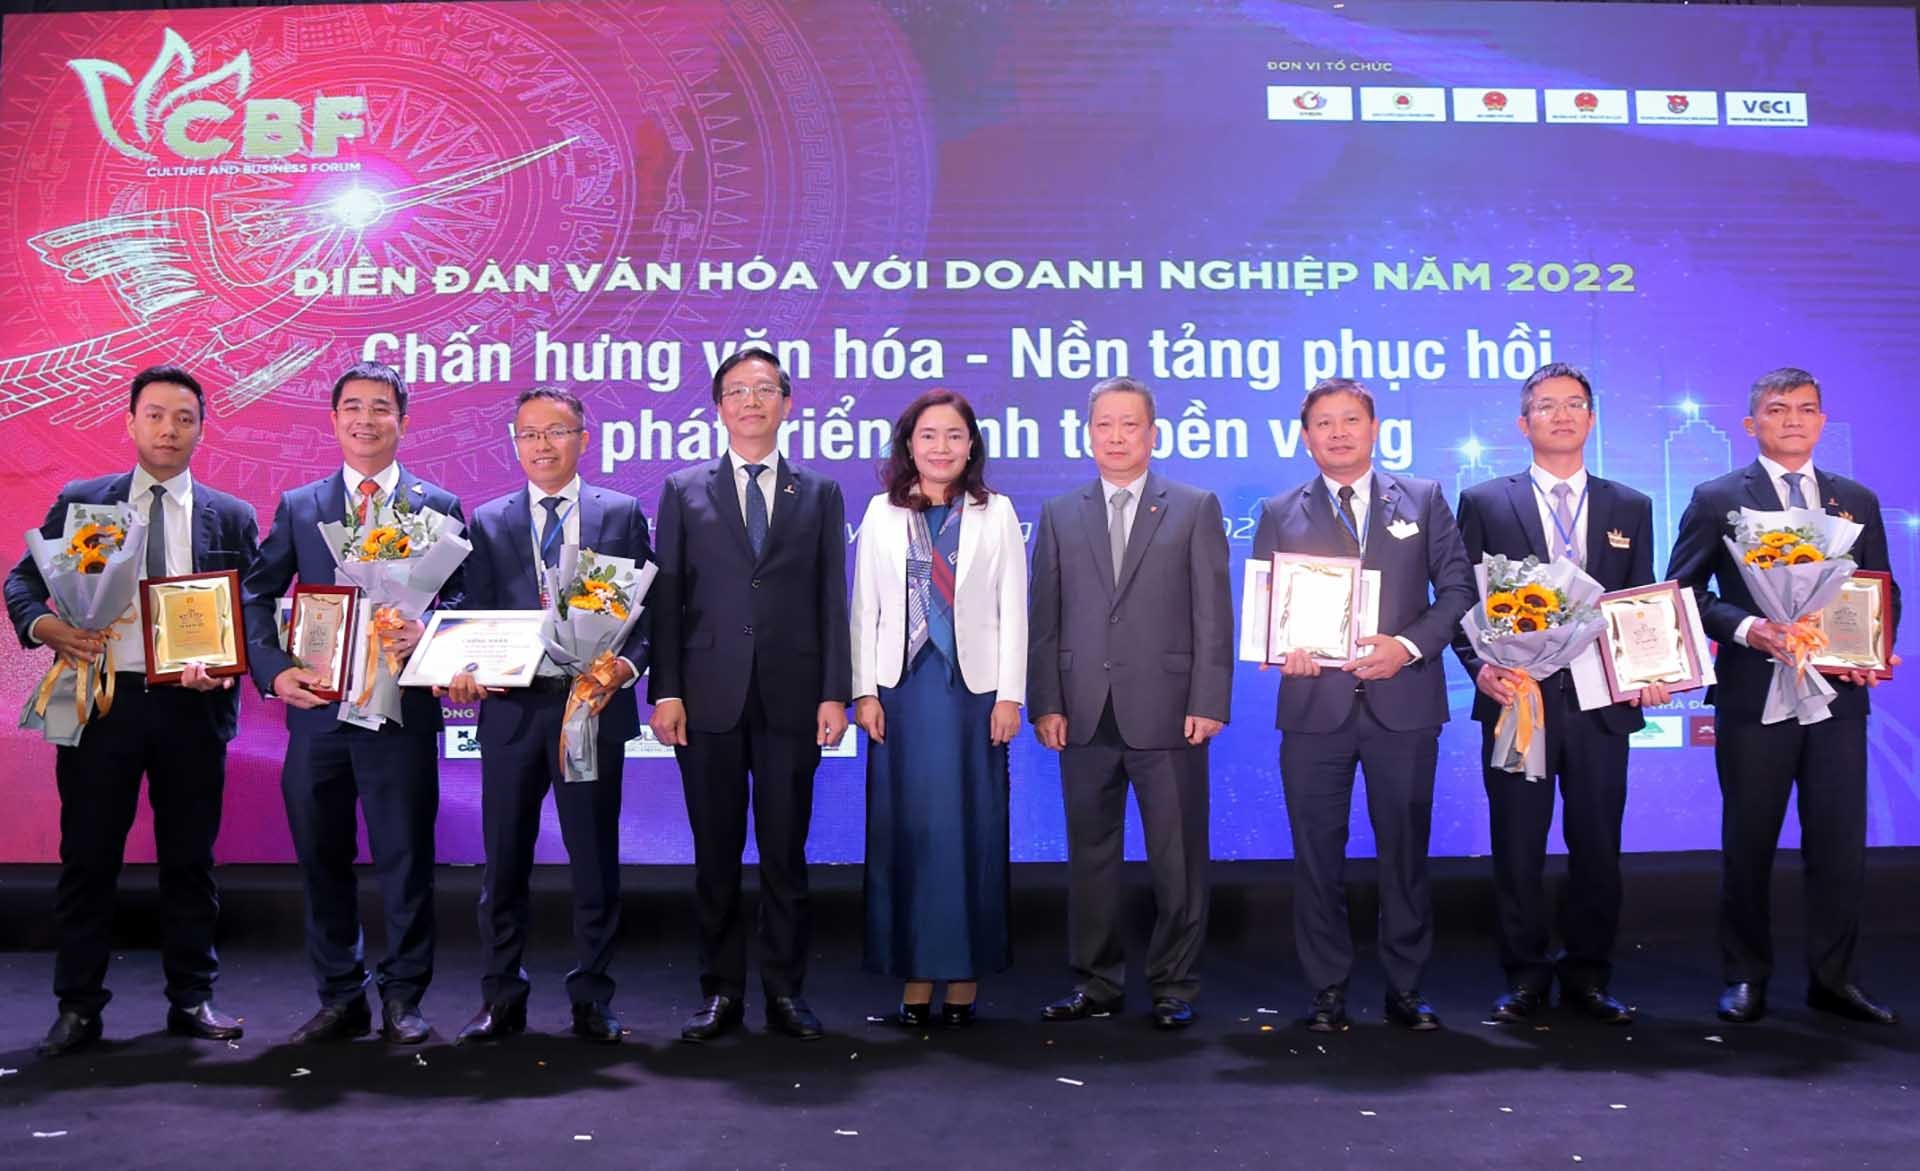 Sáu doanh nghiệp thuộc PetroVietnam được tôn vinh và trao chứng nhận “Doanh nghiệp đạt chuẩn Văn hoá kinh doanh Việt Nam” năm 2022.